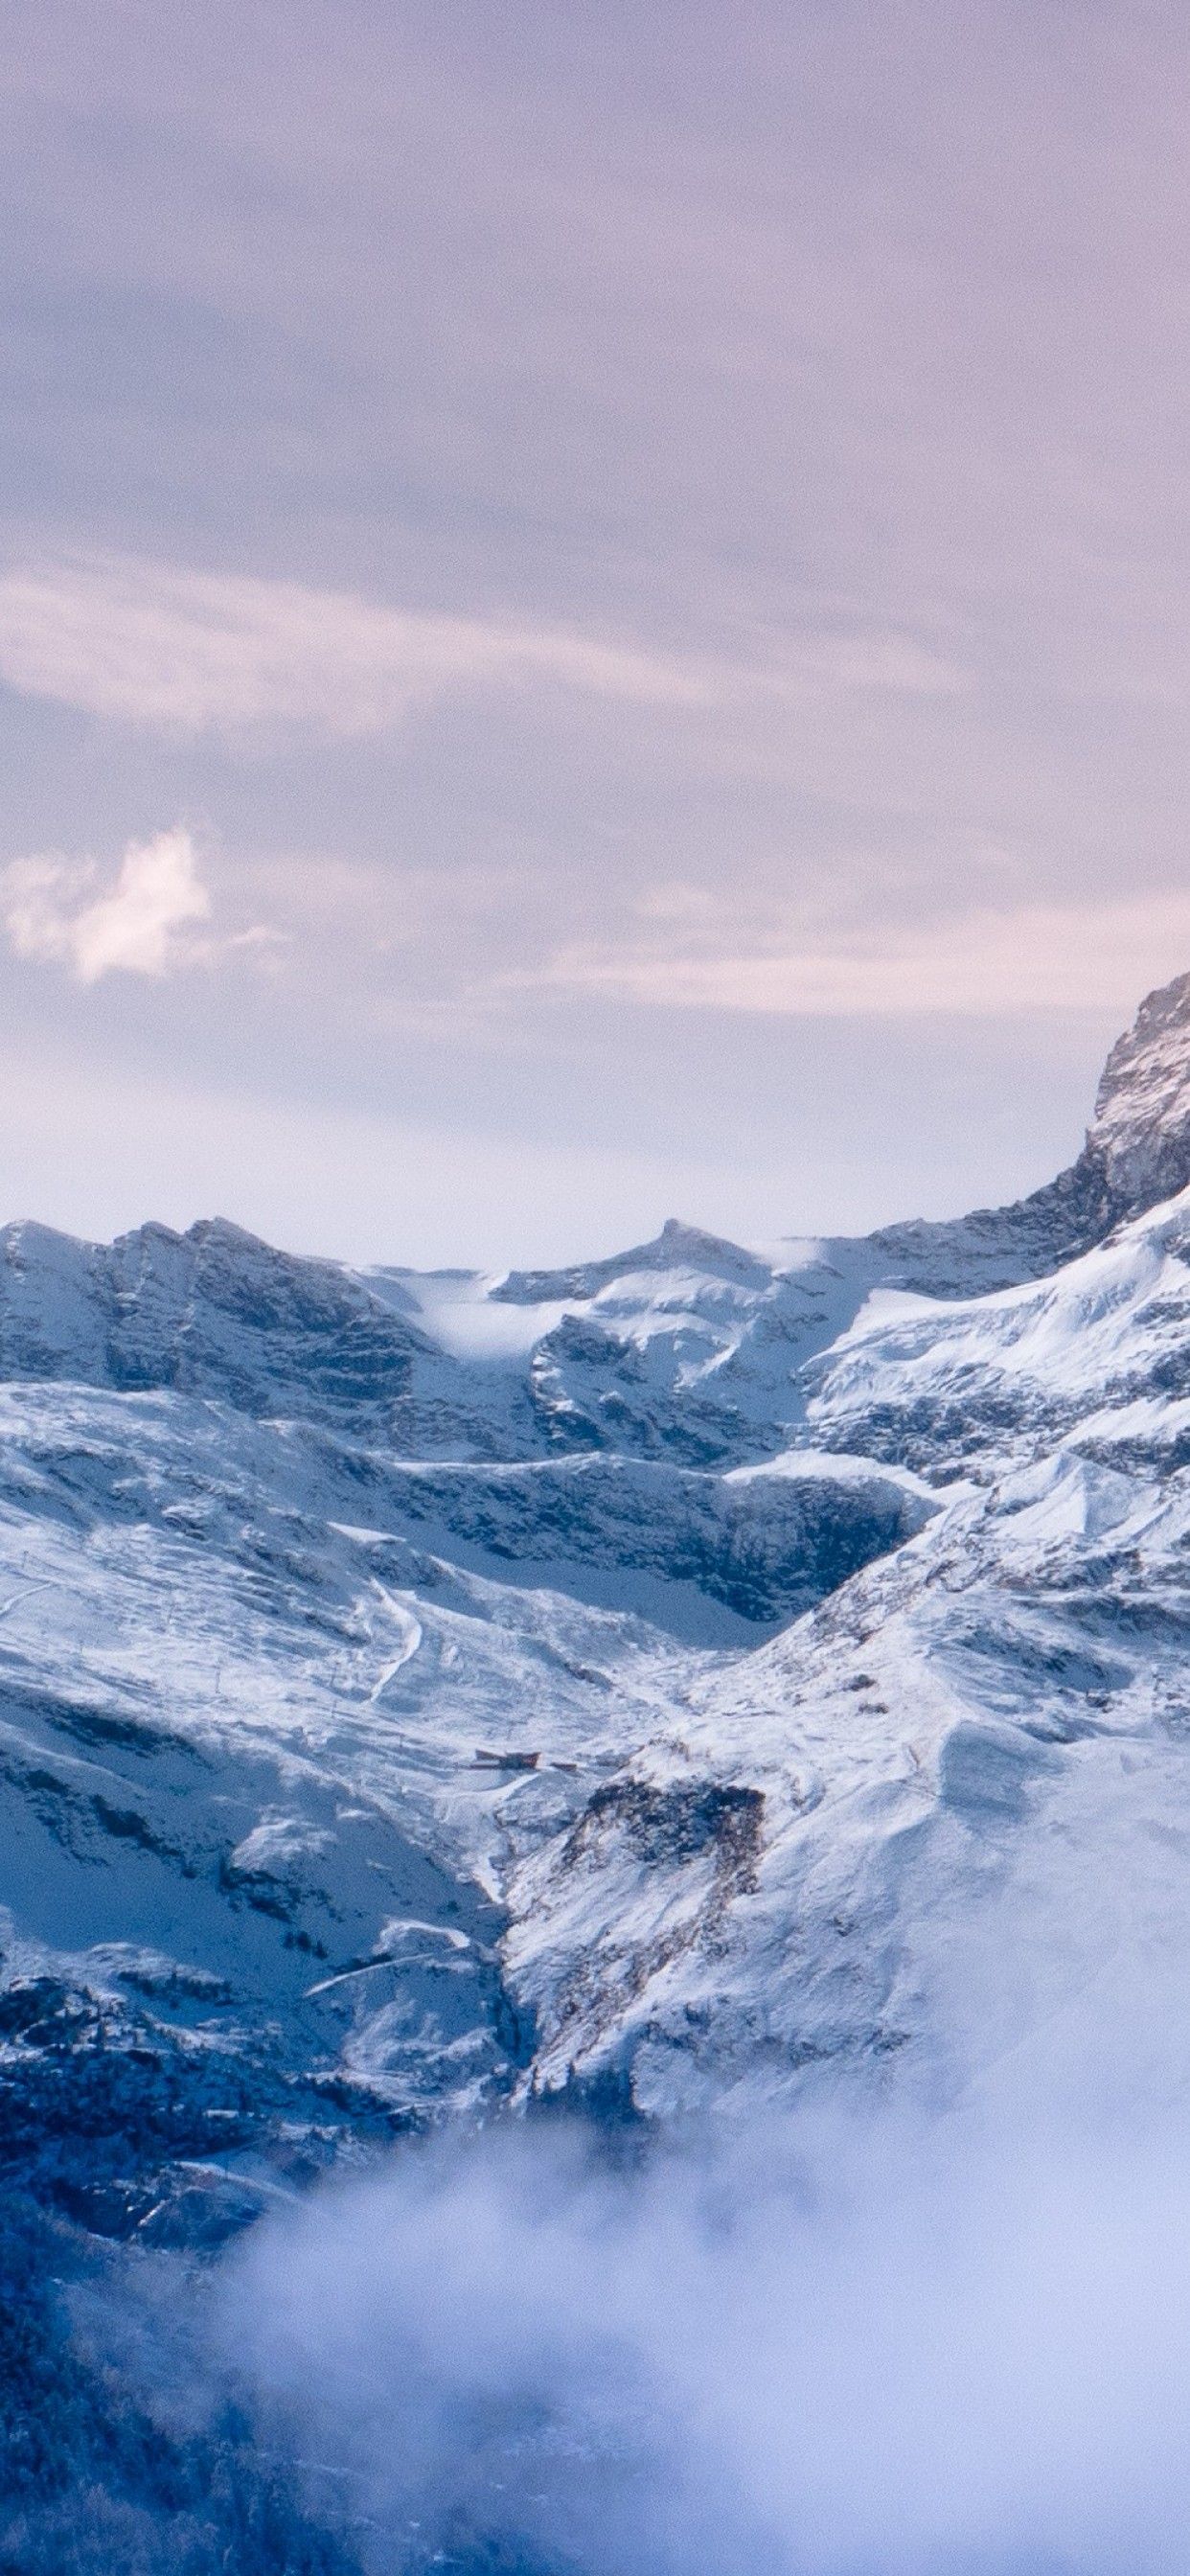 Alps Mountain Matterhorn Switzerland iPhone Wallpaper